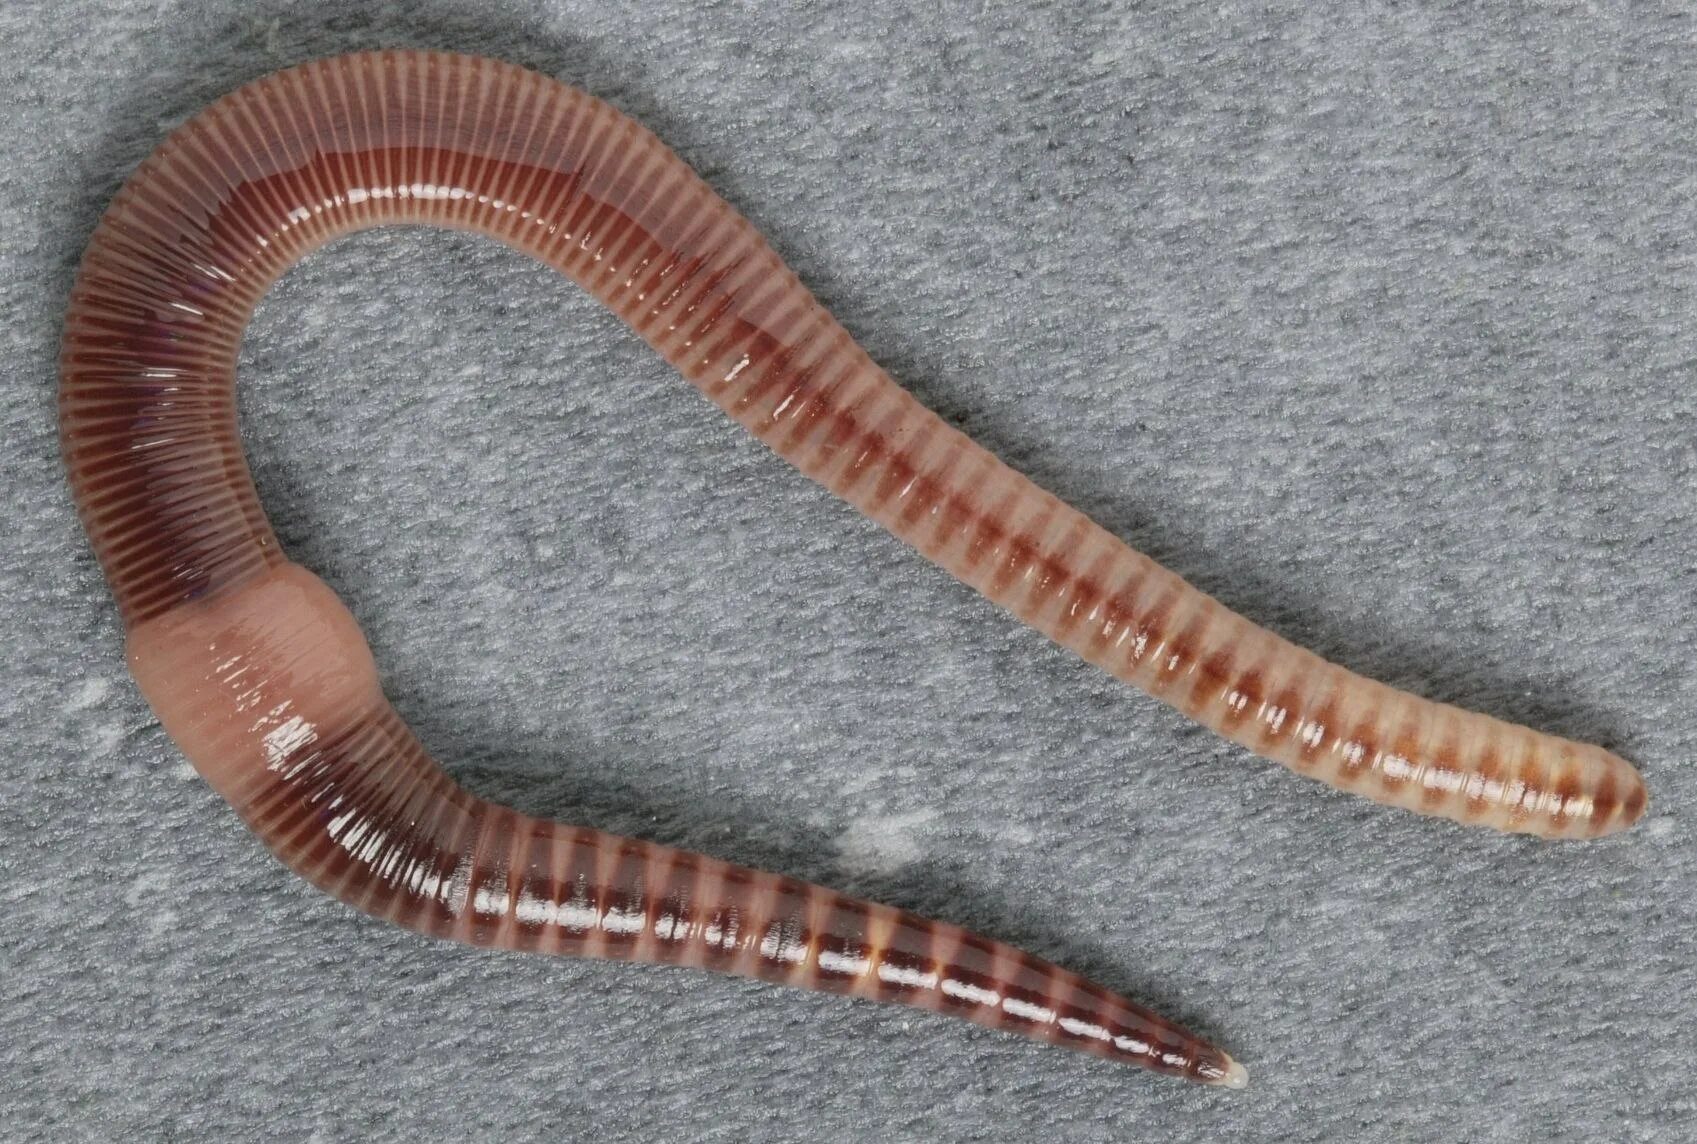 Малошетниковфй крльчатые черви. Малощетинковые кольчатые черви. Малощетинковые черви (дождевой червь). Oligochaeta (Малощетинковые черви).